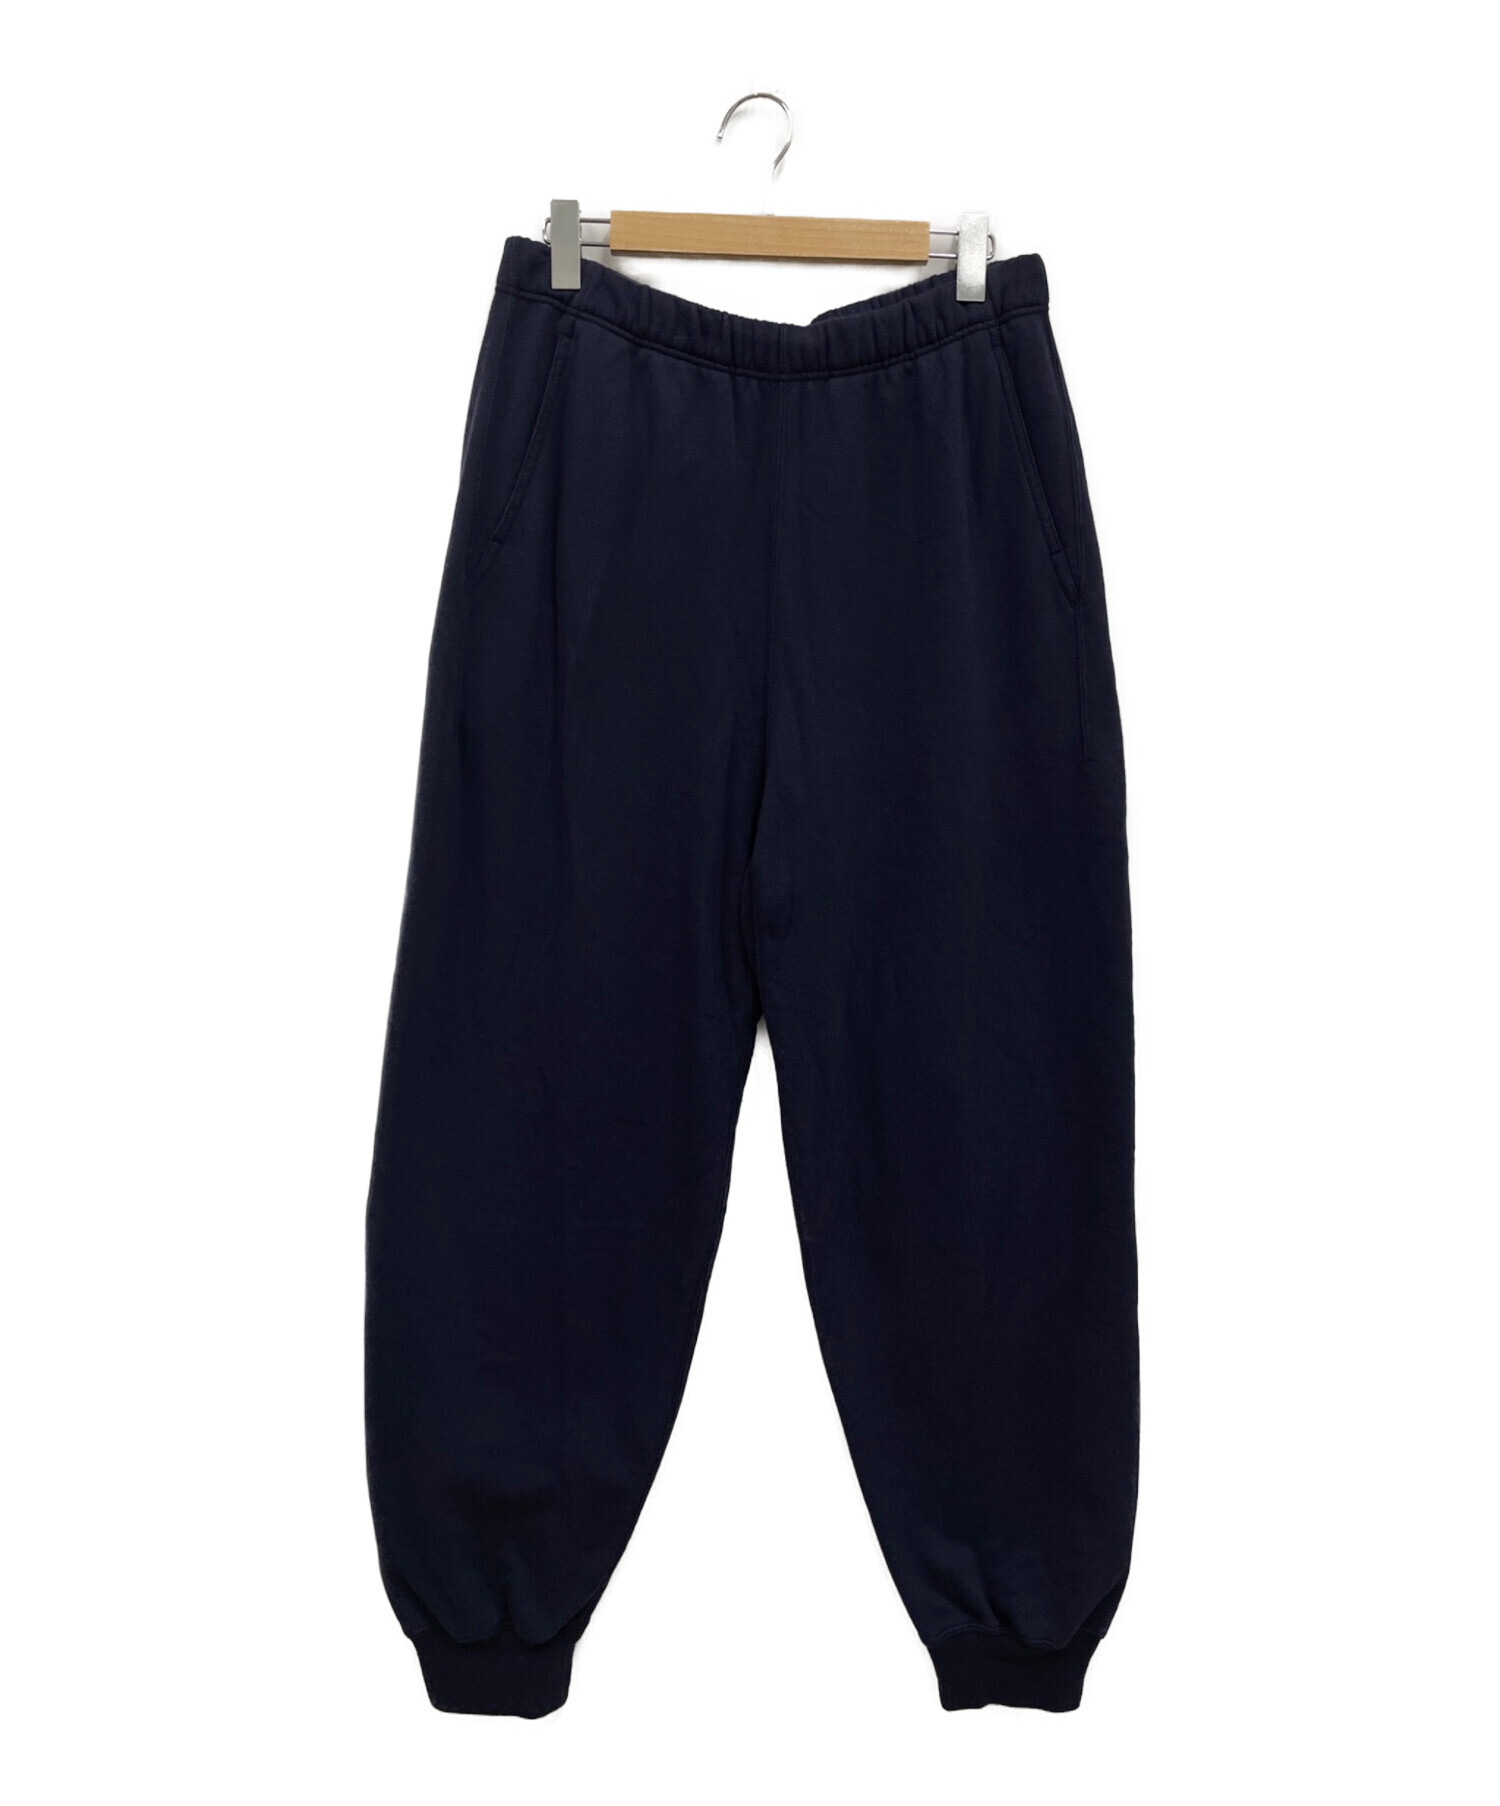 nanamica (ナナミカ) Sweat Pants スウェットパンツ SUCF176 ネイビー サイズ:36